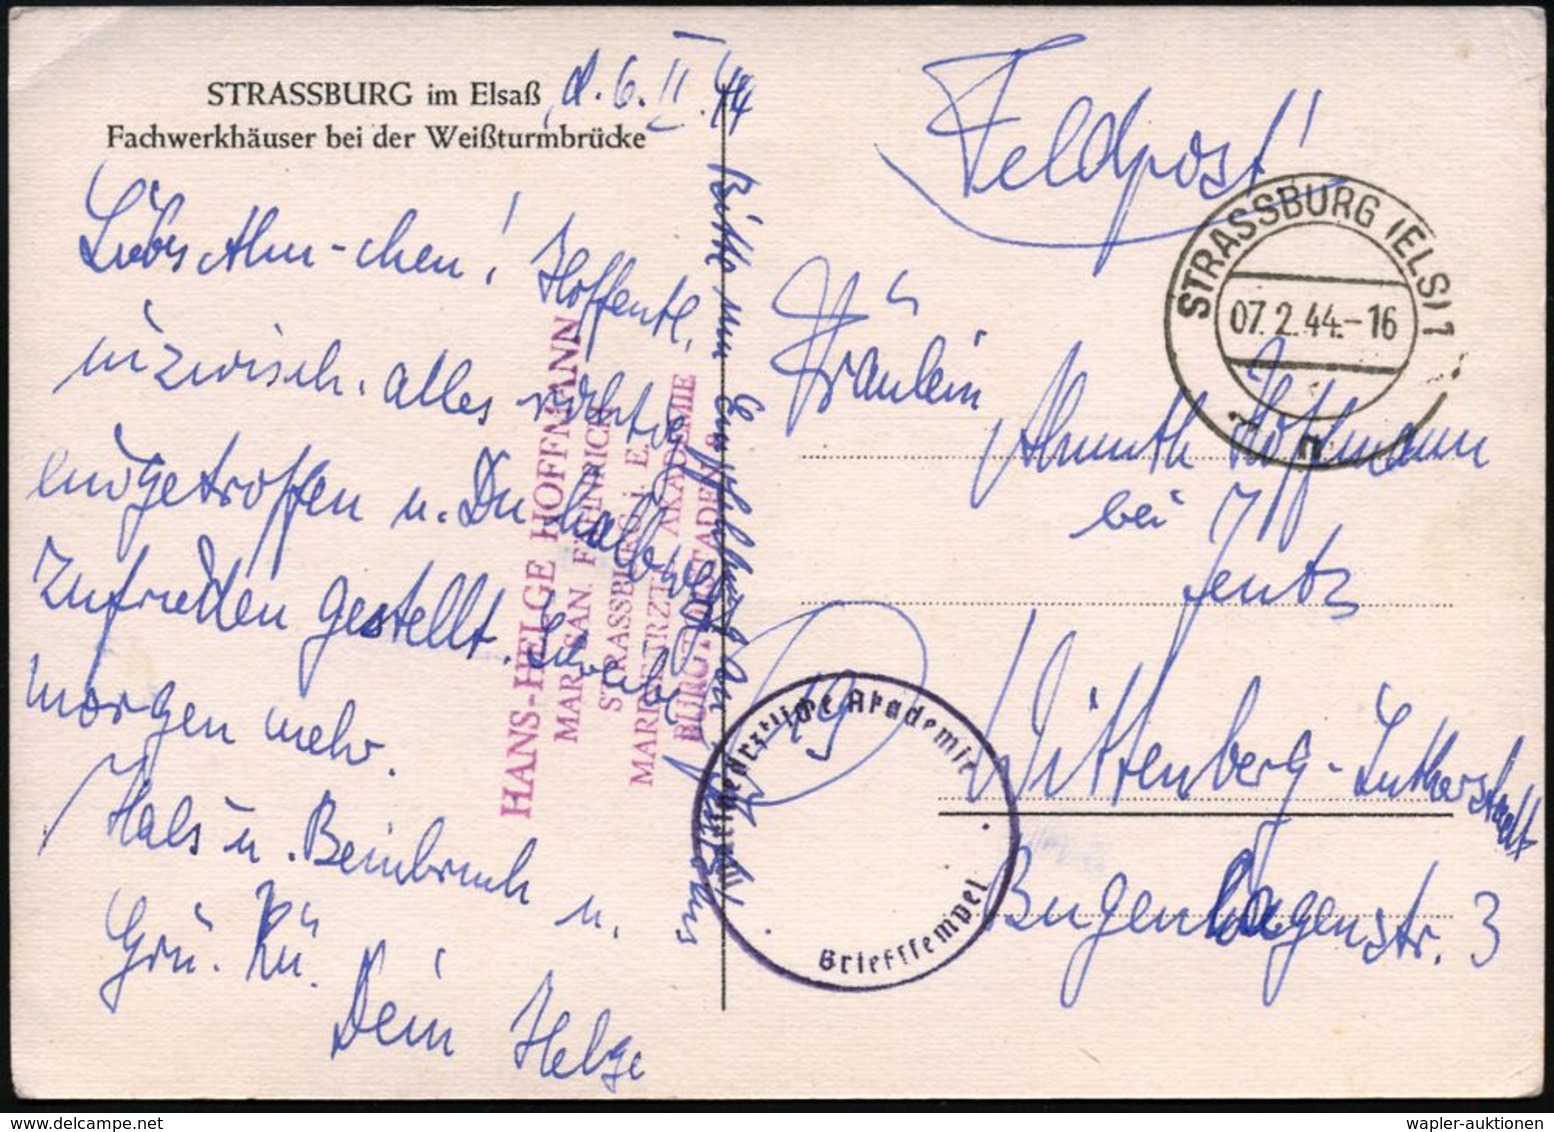 STRASSBURG (ELS) 1/ N 1944 (7.2.) 2K-Steg + Blauer 1K-HdN: Marineärztliche Akademie + Viol. Abs.-5L: ...MAR. SAN. FÄHRIC - Guerre Mondiale (Seconde)